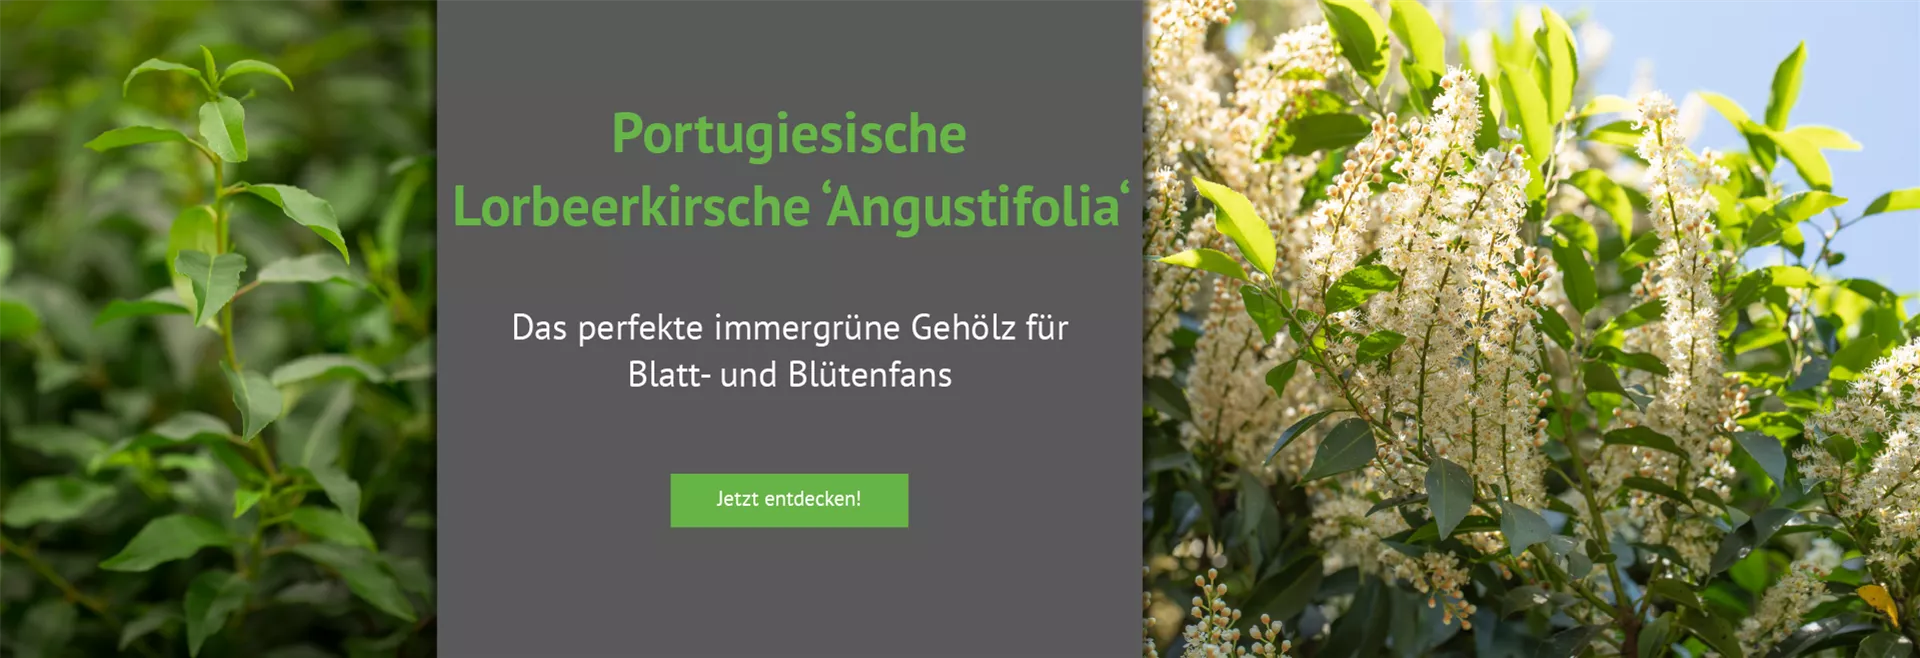 Entdecken Sie unsere Portugiesische Lorbeerkirsche 'Angustifolia'